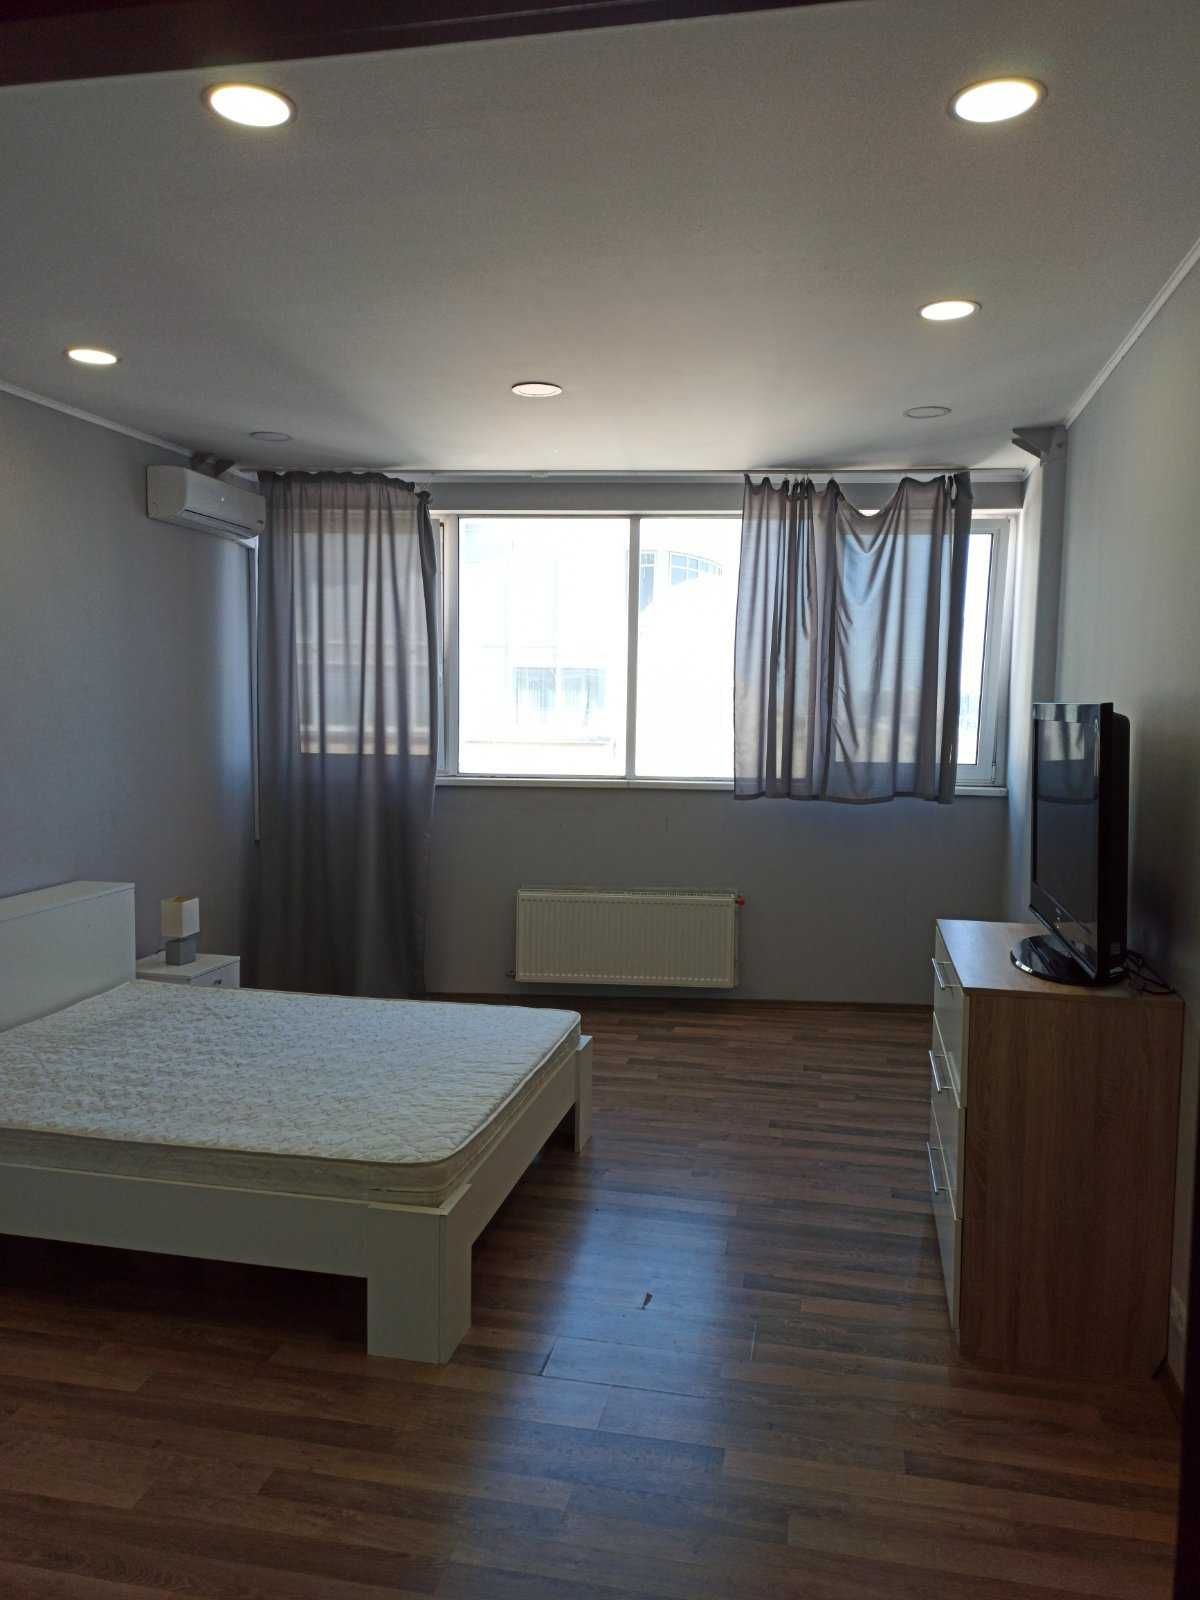 Оренда 3-х кімнатної квартири на Р. Окіпної 10 з панорамним видом